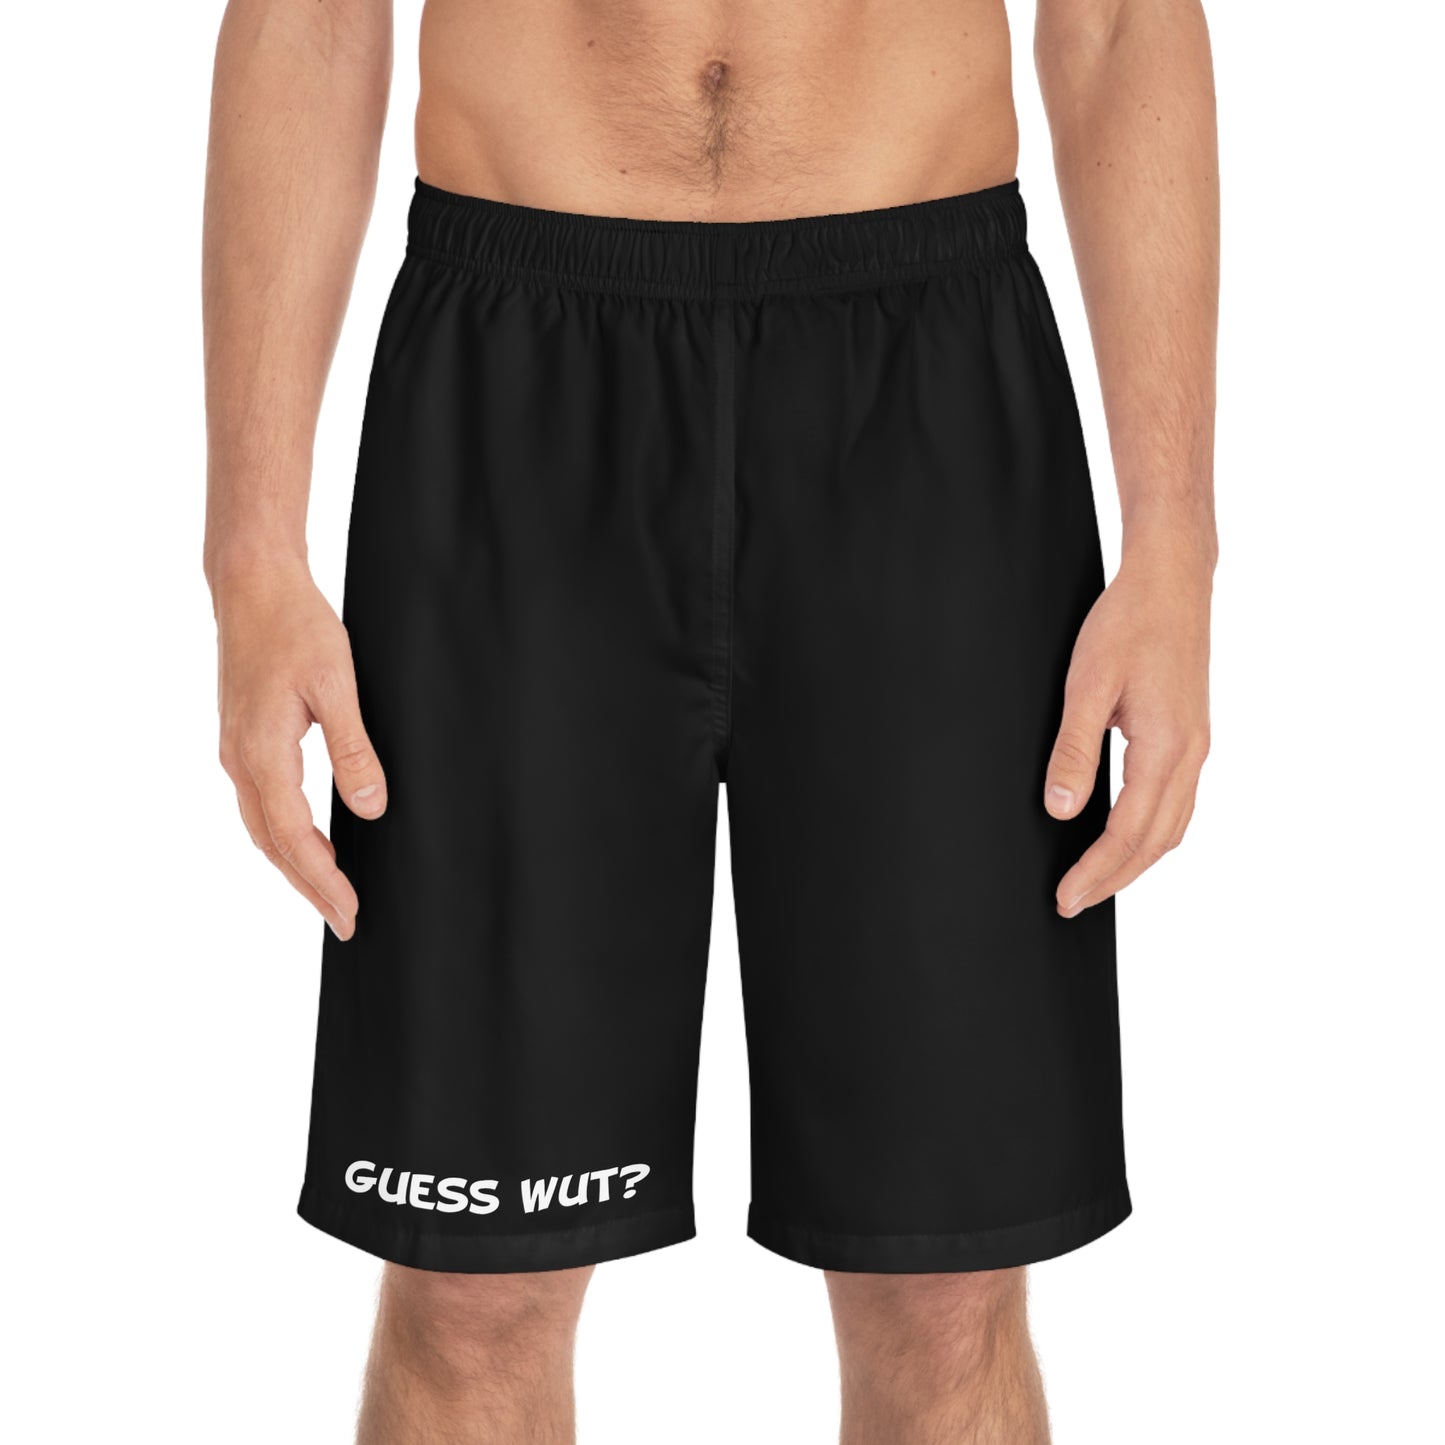 Chicken Butt - Board/Gym Shorts